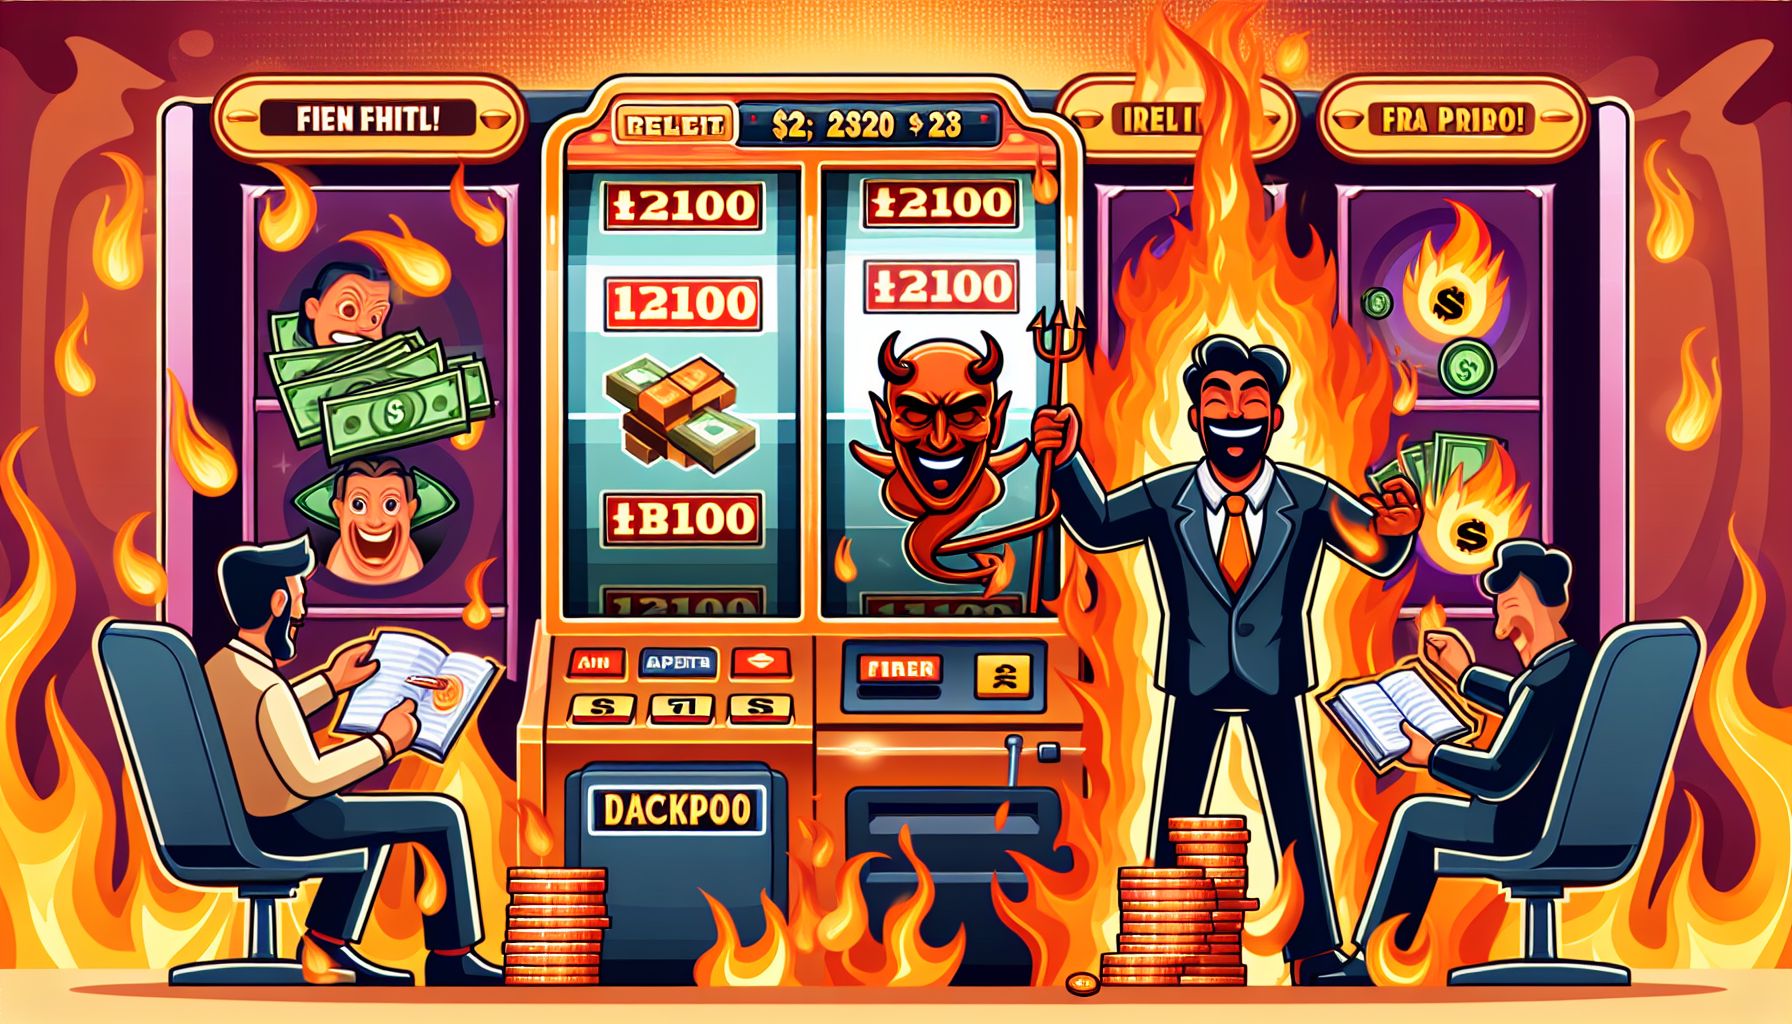 Jackpot Slot Fire Portals